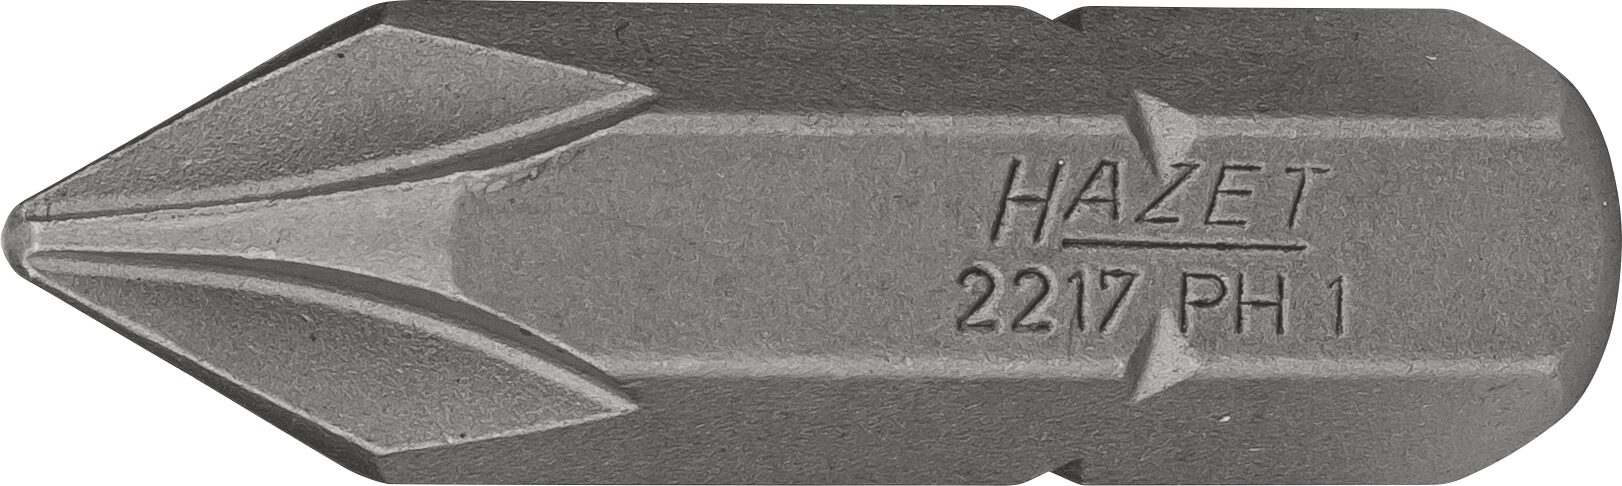 HAZET Bit 2217-PH1 · Sechskant massiv 8 (5/16 Zoll) · Kreuzschlitz Profil PH · PH1